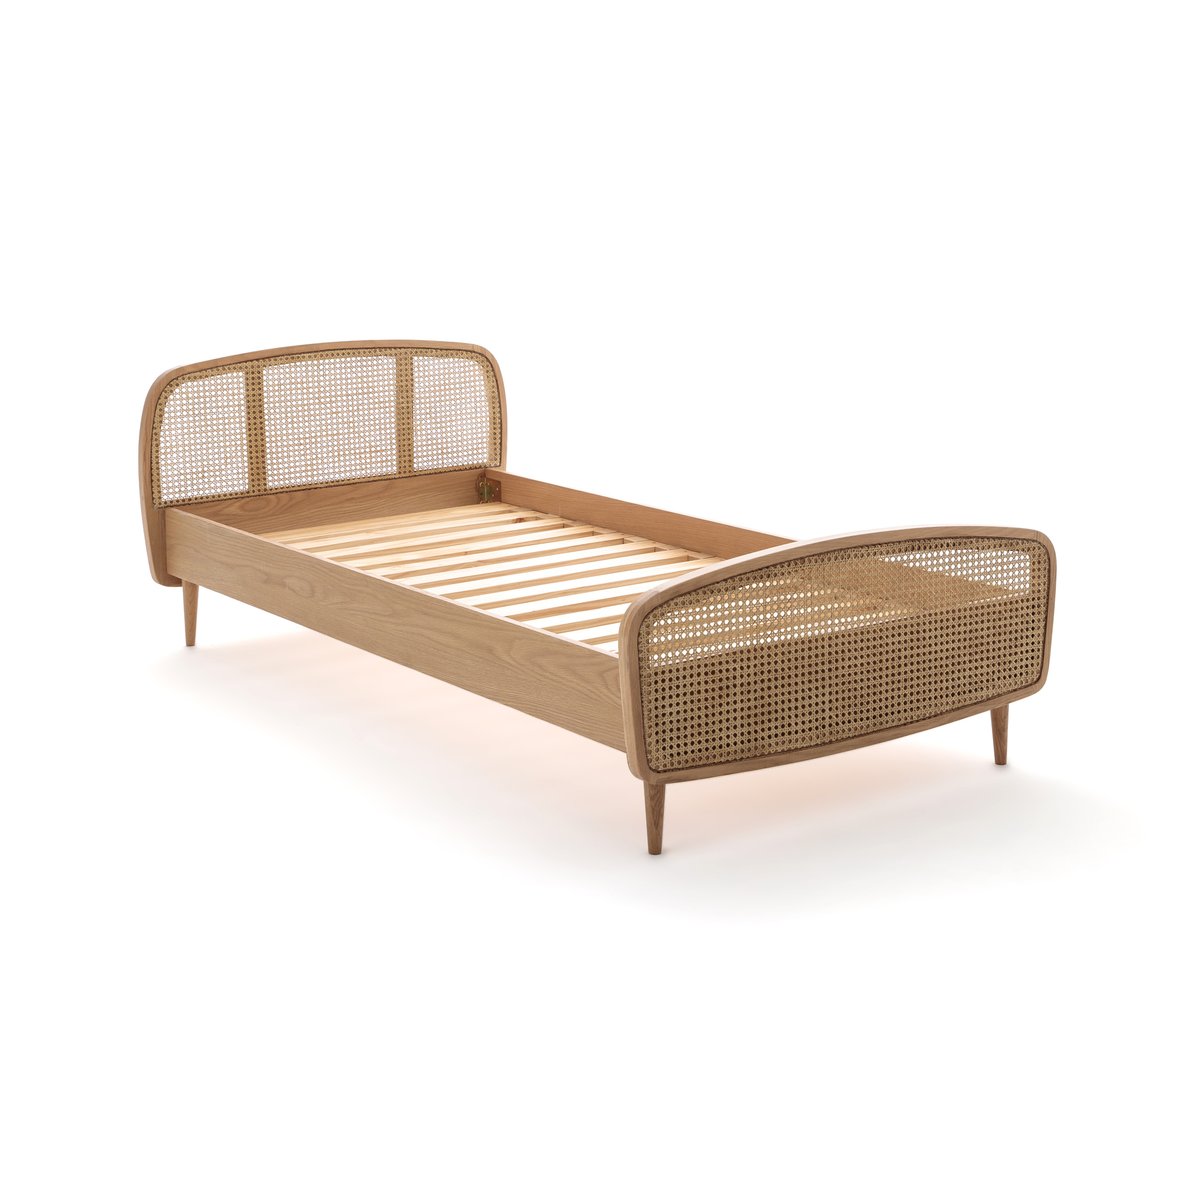 Кровать La Redoute Детская из дуба и плетеного ротанга с основанием Buisseau 90 x 190 см каштановый, размер 90 x 190 см - фото 4